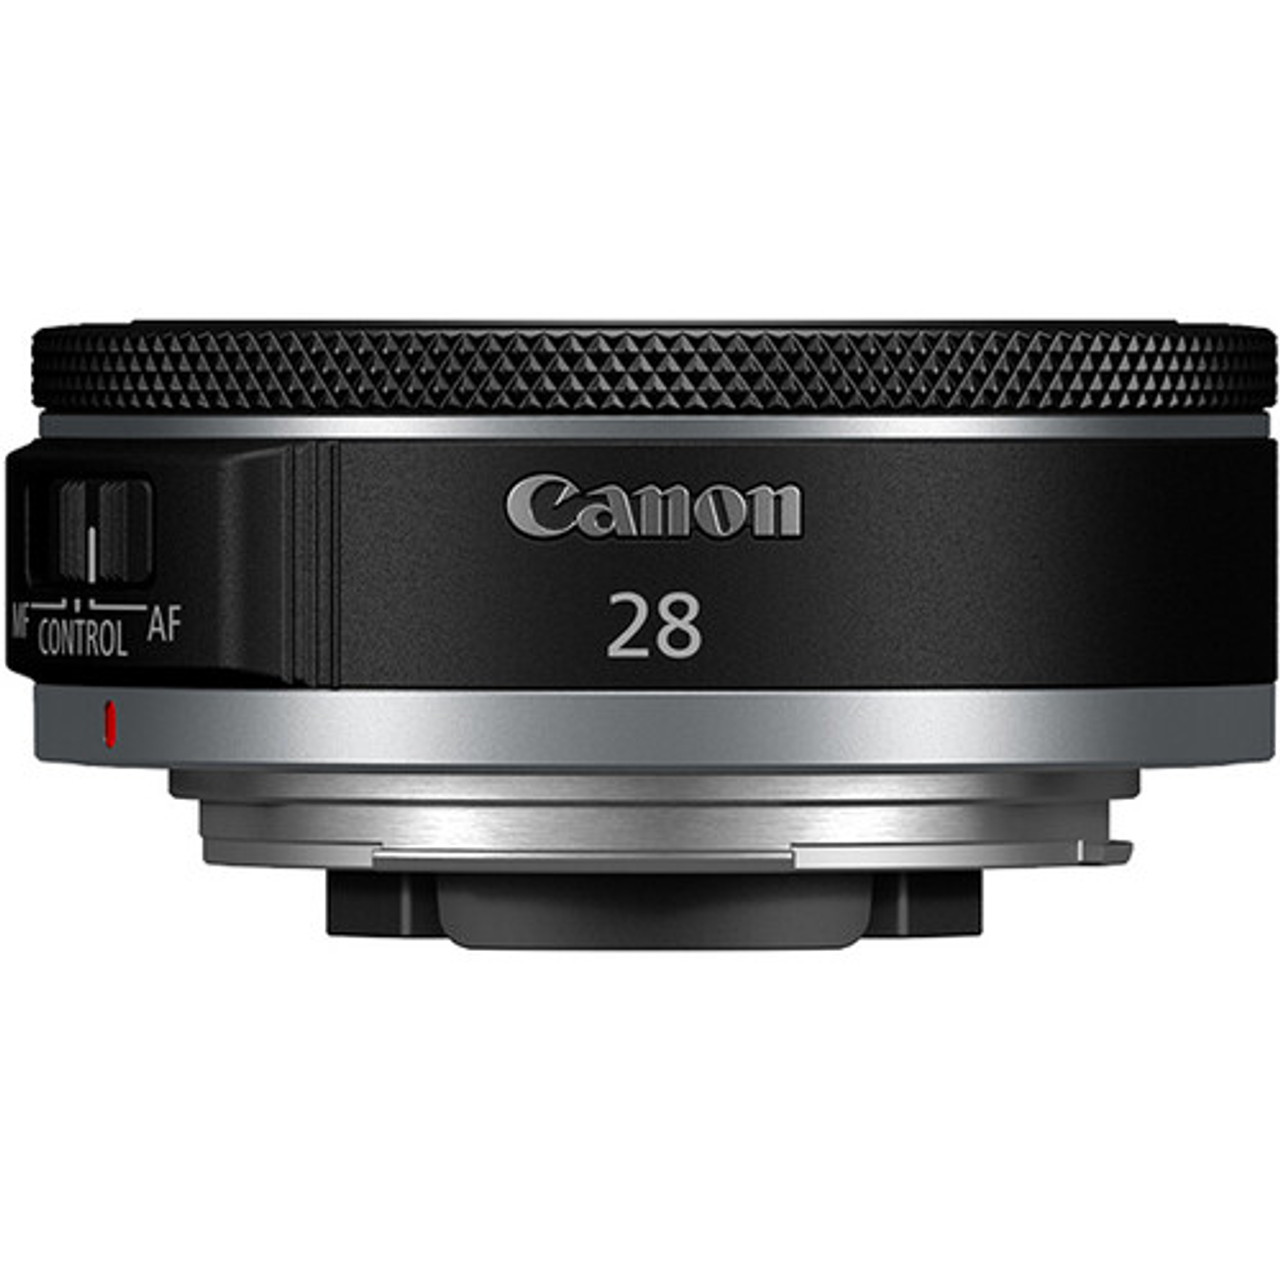 Canon RF 28mm F2.8 STM Lens (13803359435) | Bedfords.com